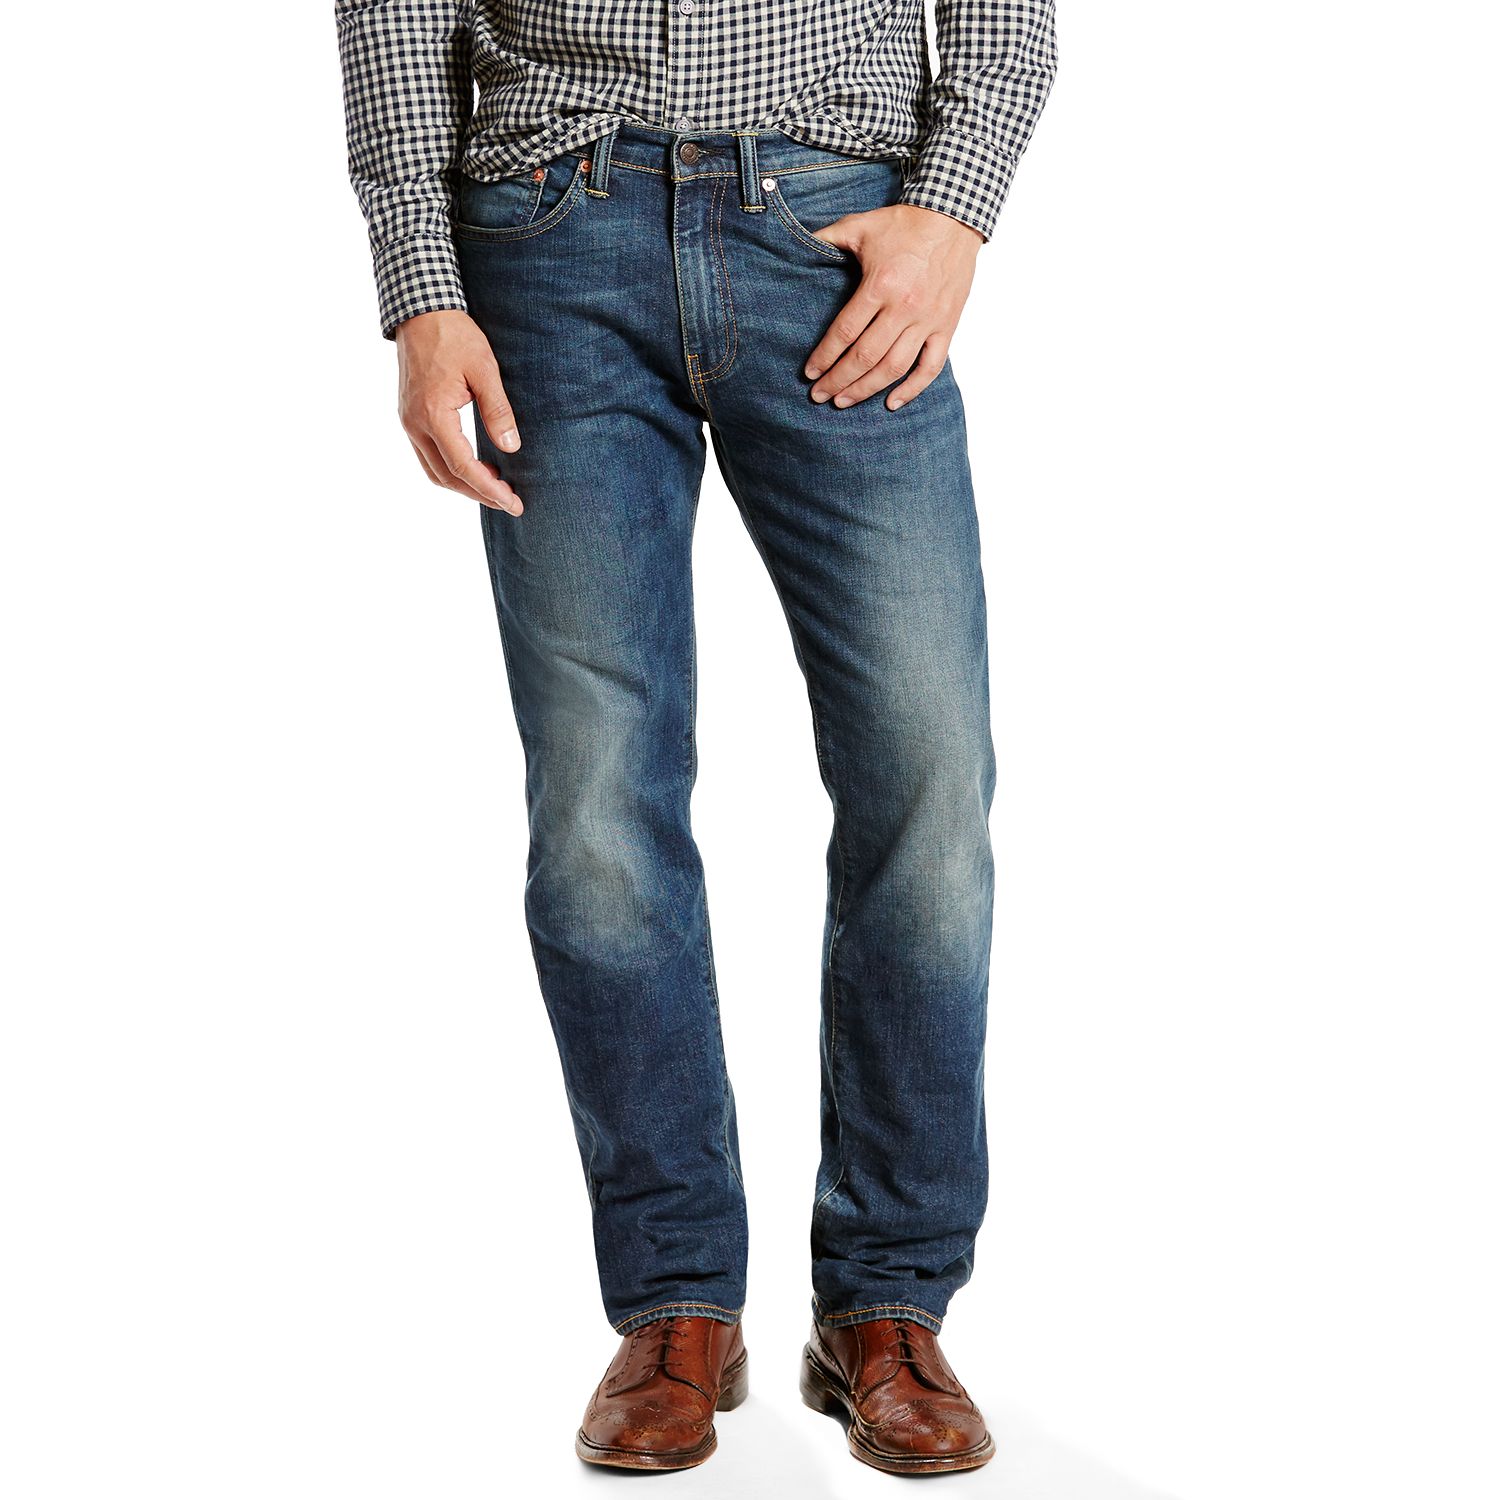 kohl's levi's 505 men's jeans